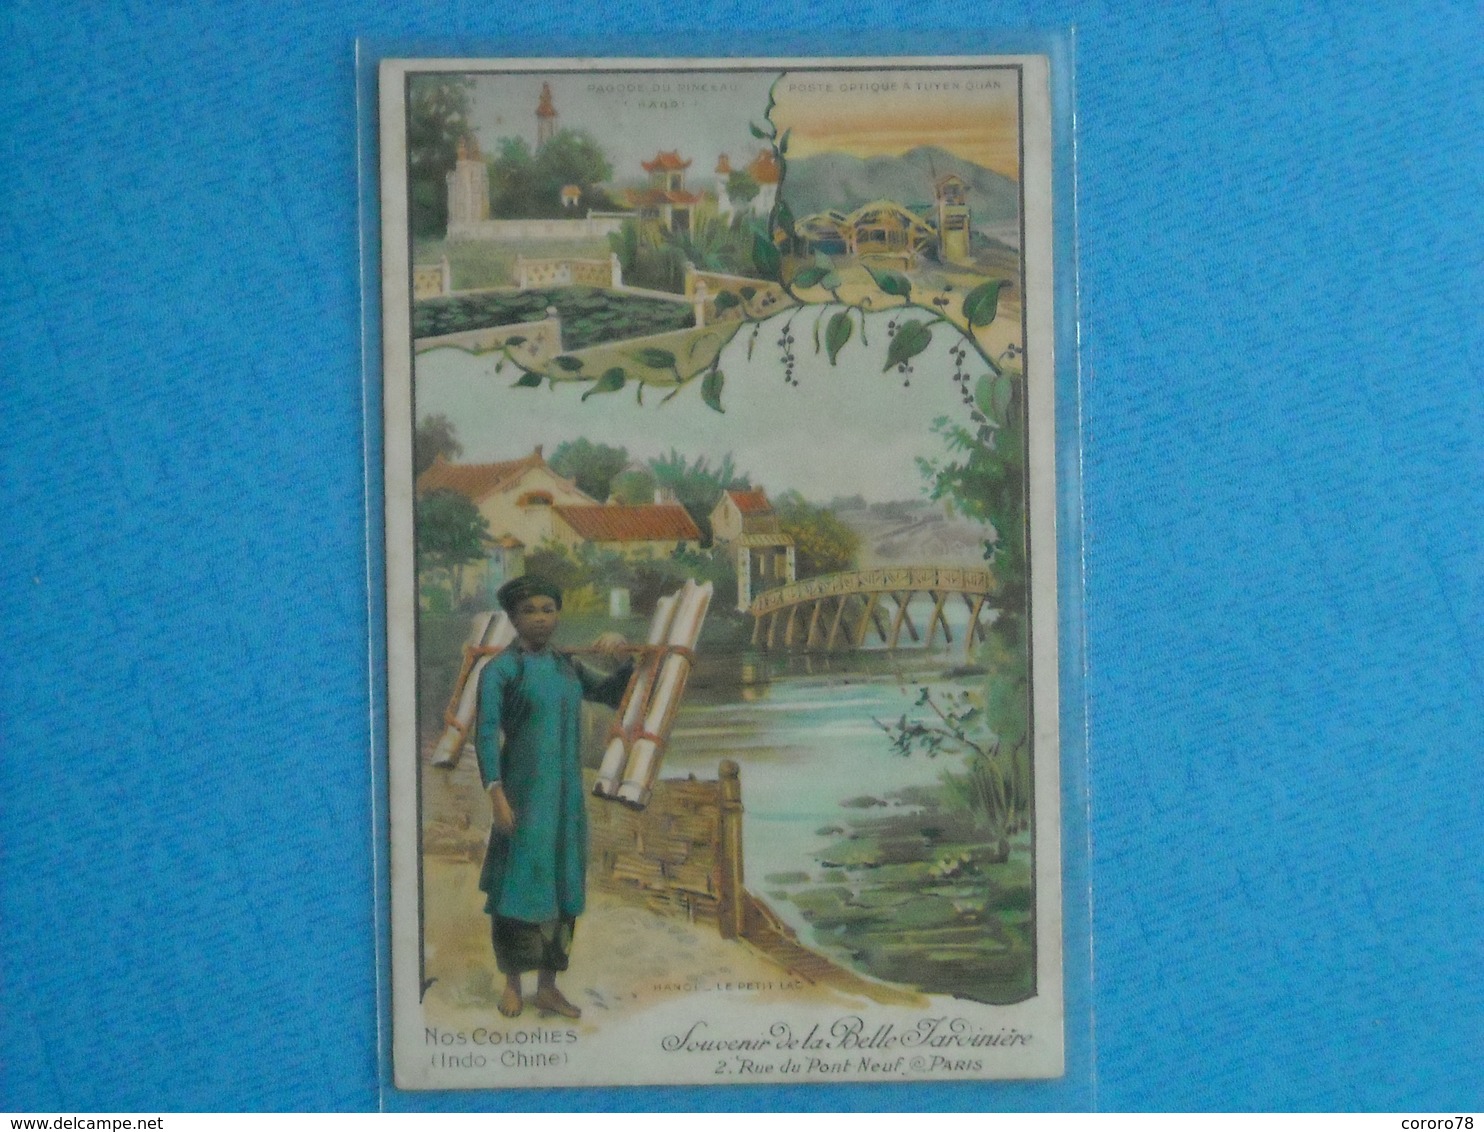 Nos Colonies (Indo-Chine) Souvenir De La Belle Jardiniére, 2 Rue Du Pont Neuf - PARIS - Publicité